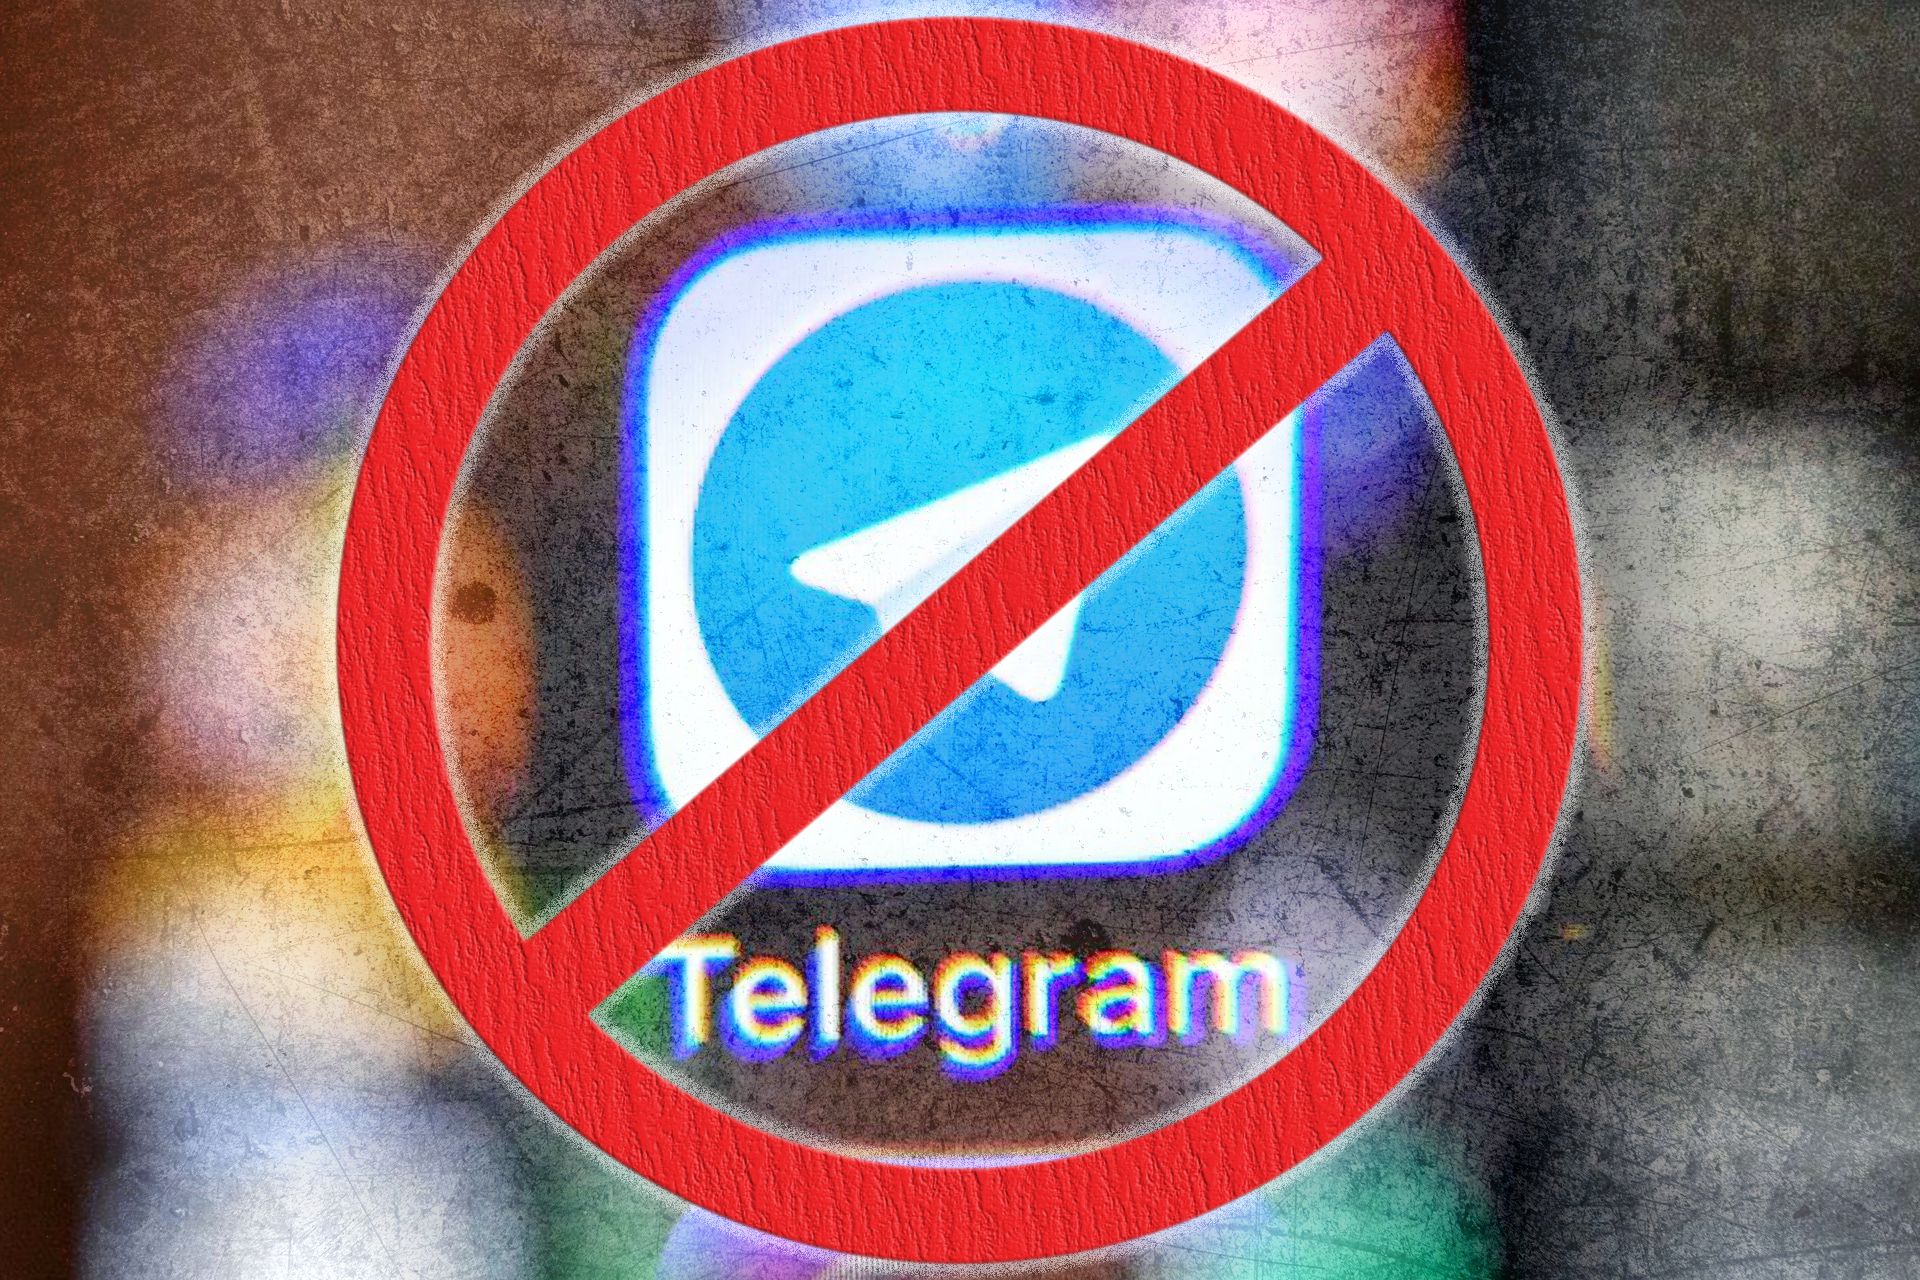  آیکون تلگرام در گوشی که روی آن علامت مسدود شدن قرار گرفته